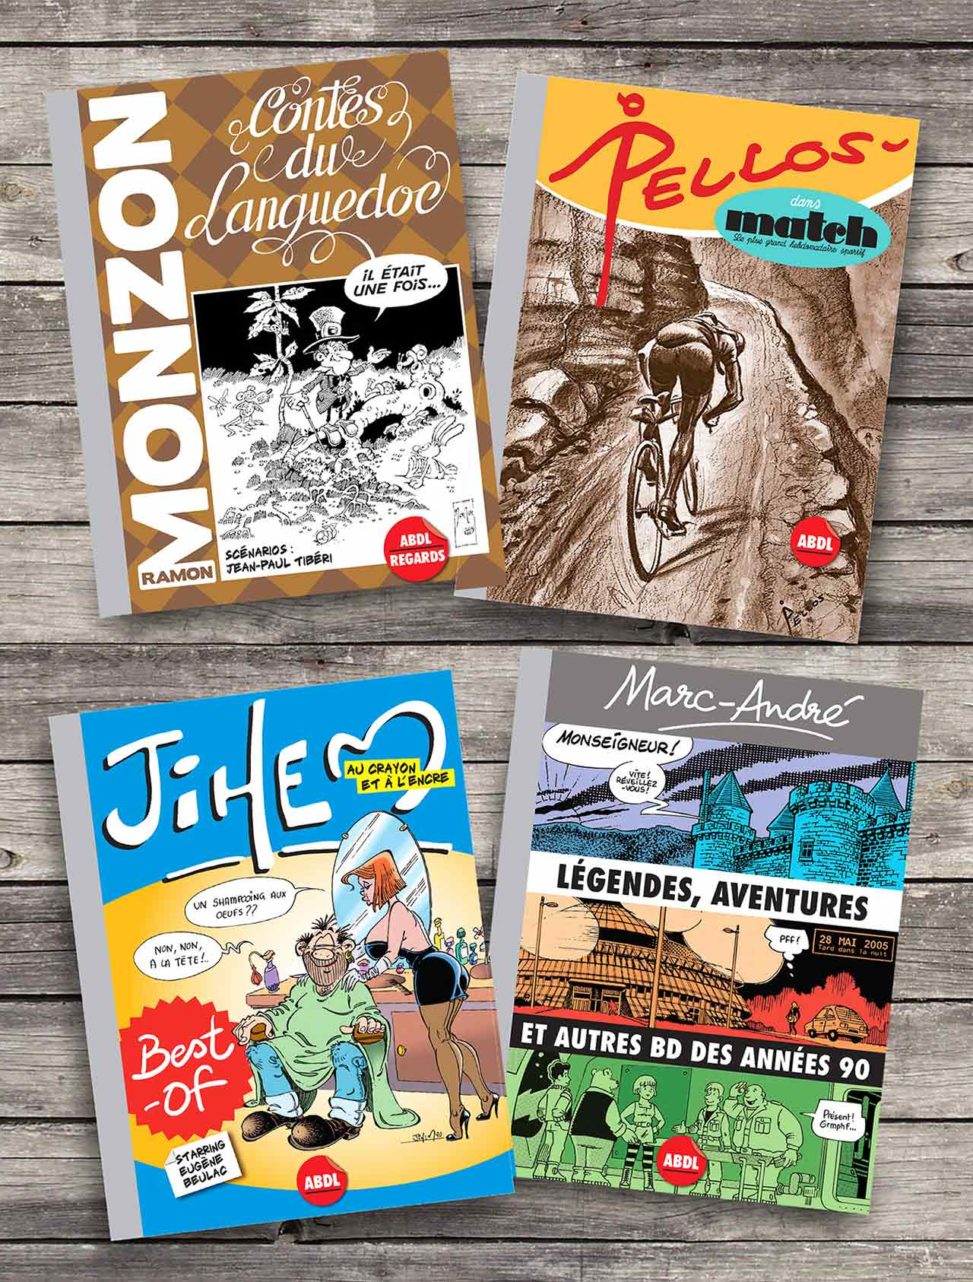 2019-Presentation 4-ouvrages BD Editions-ABDL Pellos Match Best-of Jihem Monzon et Tibéri Contes du Languedoc Marc-André Légendes aventures et autres BD des années 90